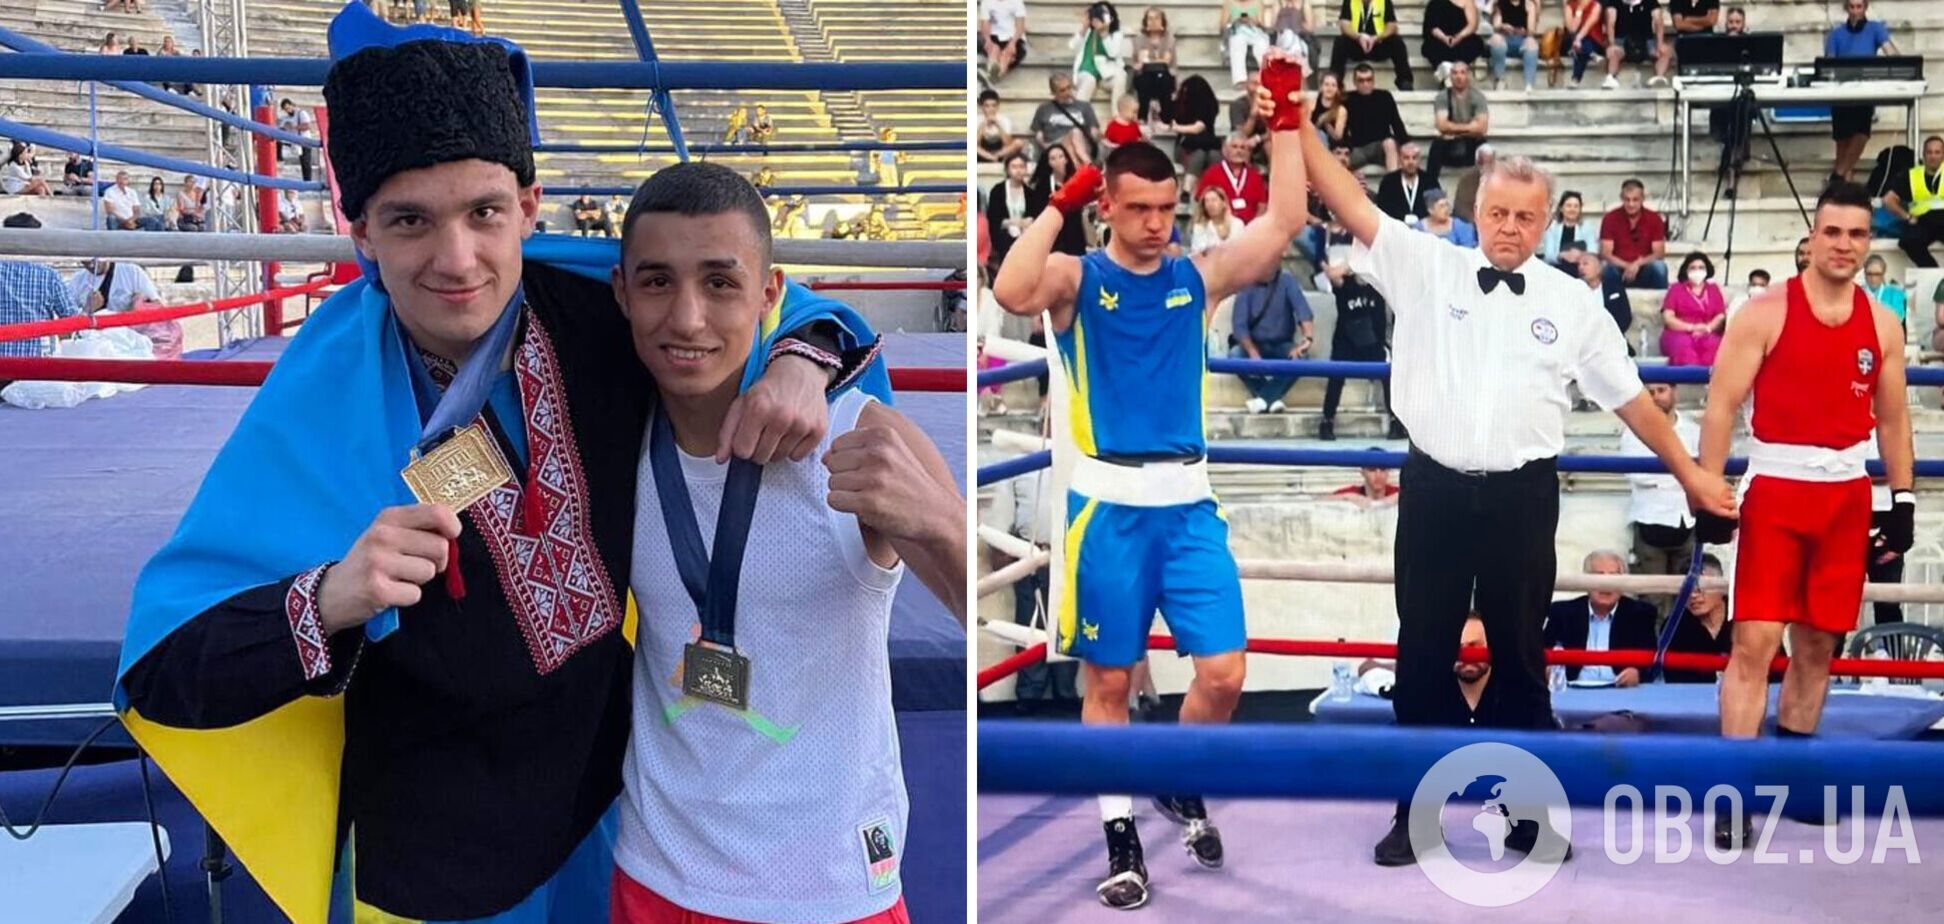 Гопак украинского боксера в Греции обернулся скандалом: потребовали от победителя убрать национальную символику